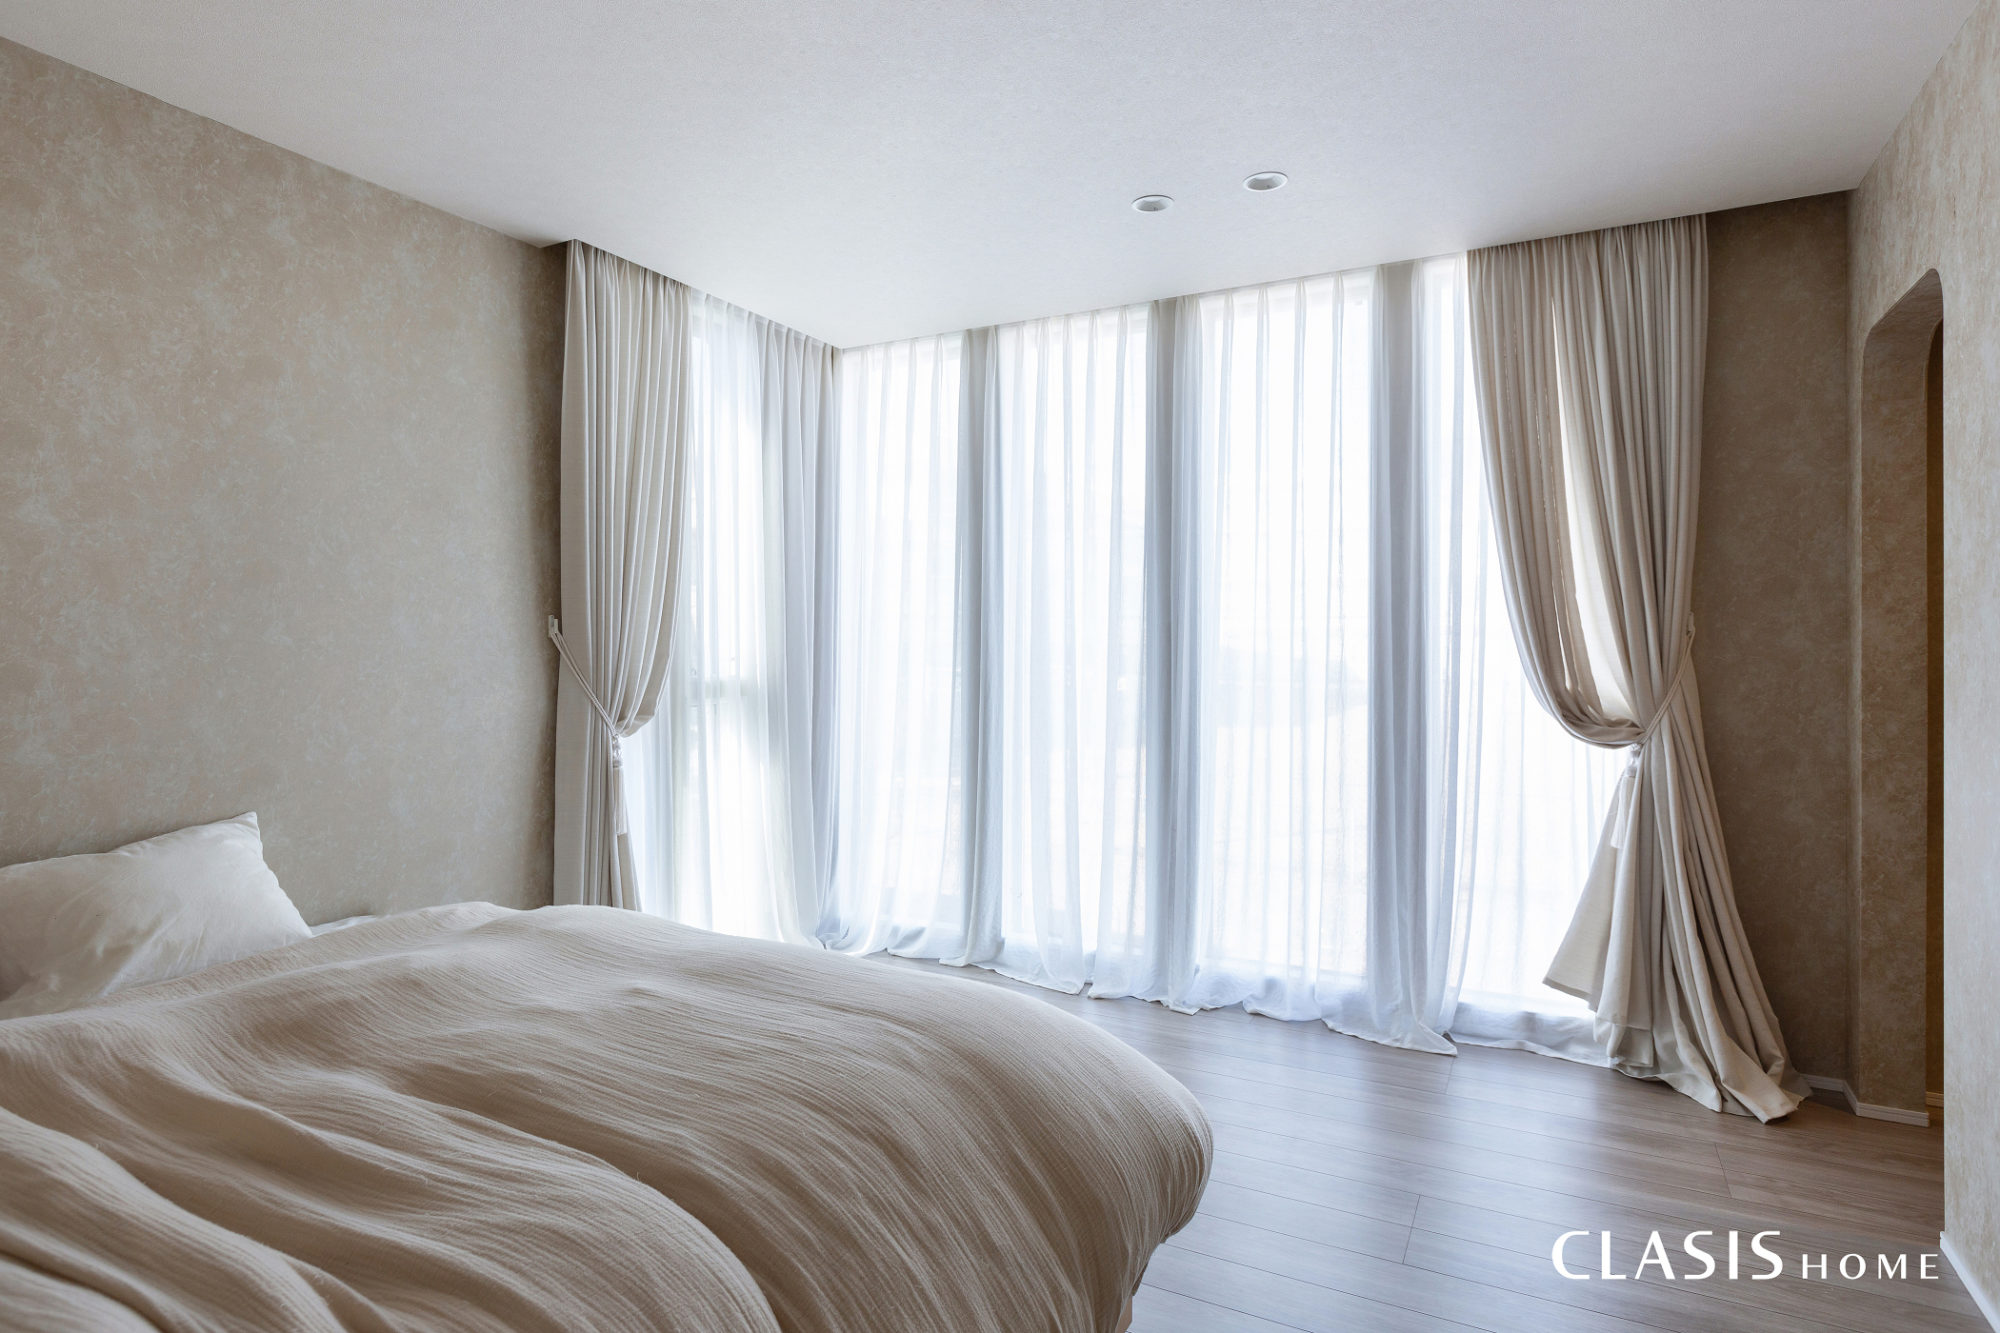 大きな窓から柔らかく陽が差し込む寝室。ベージュで統一した淡いインテリアが癒しの空間を作ります。